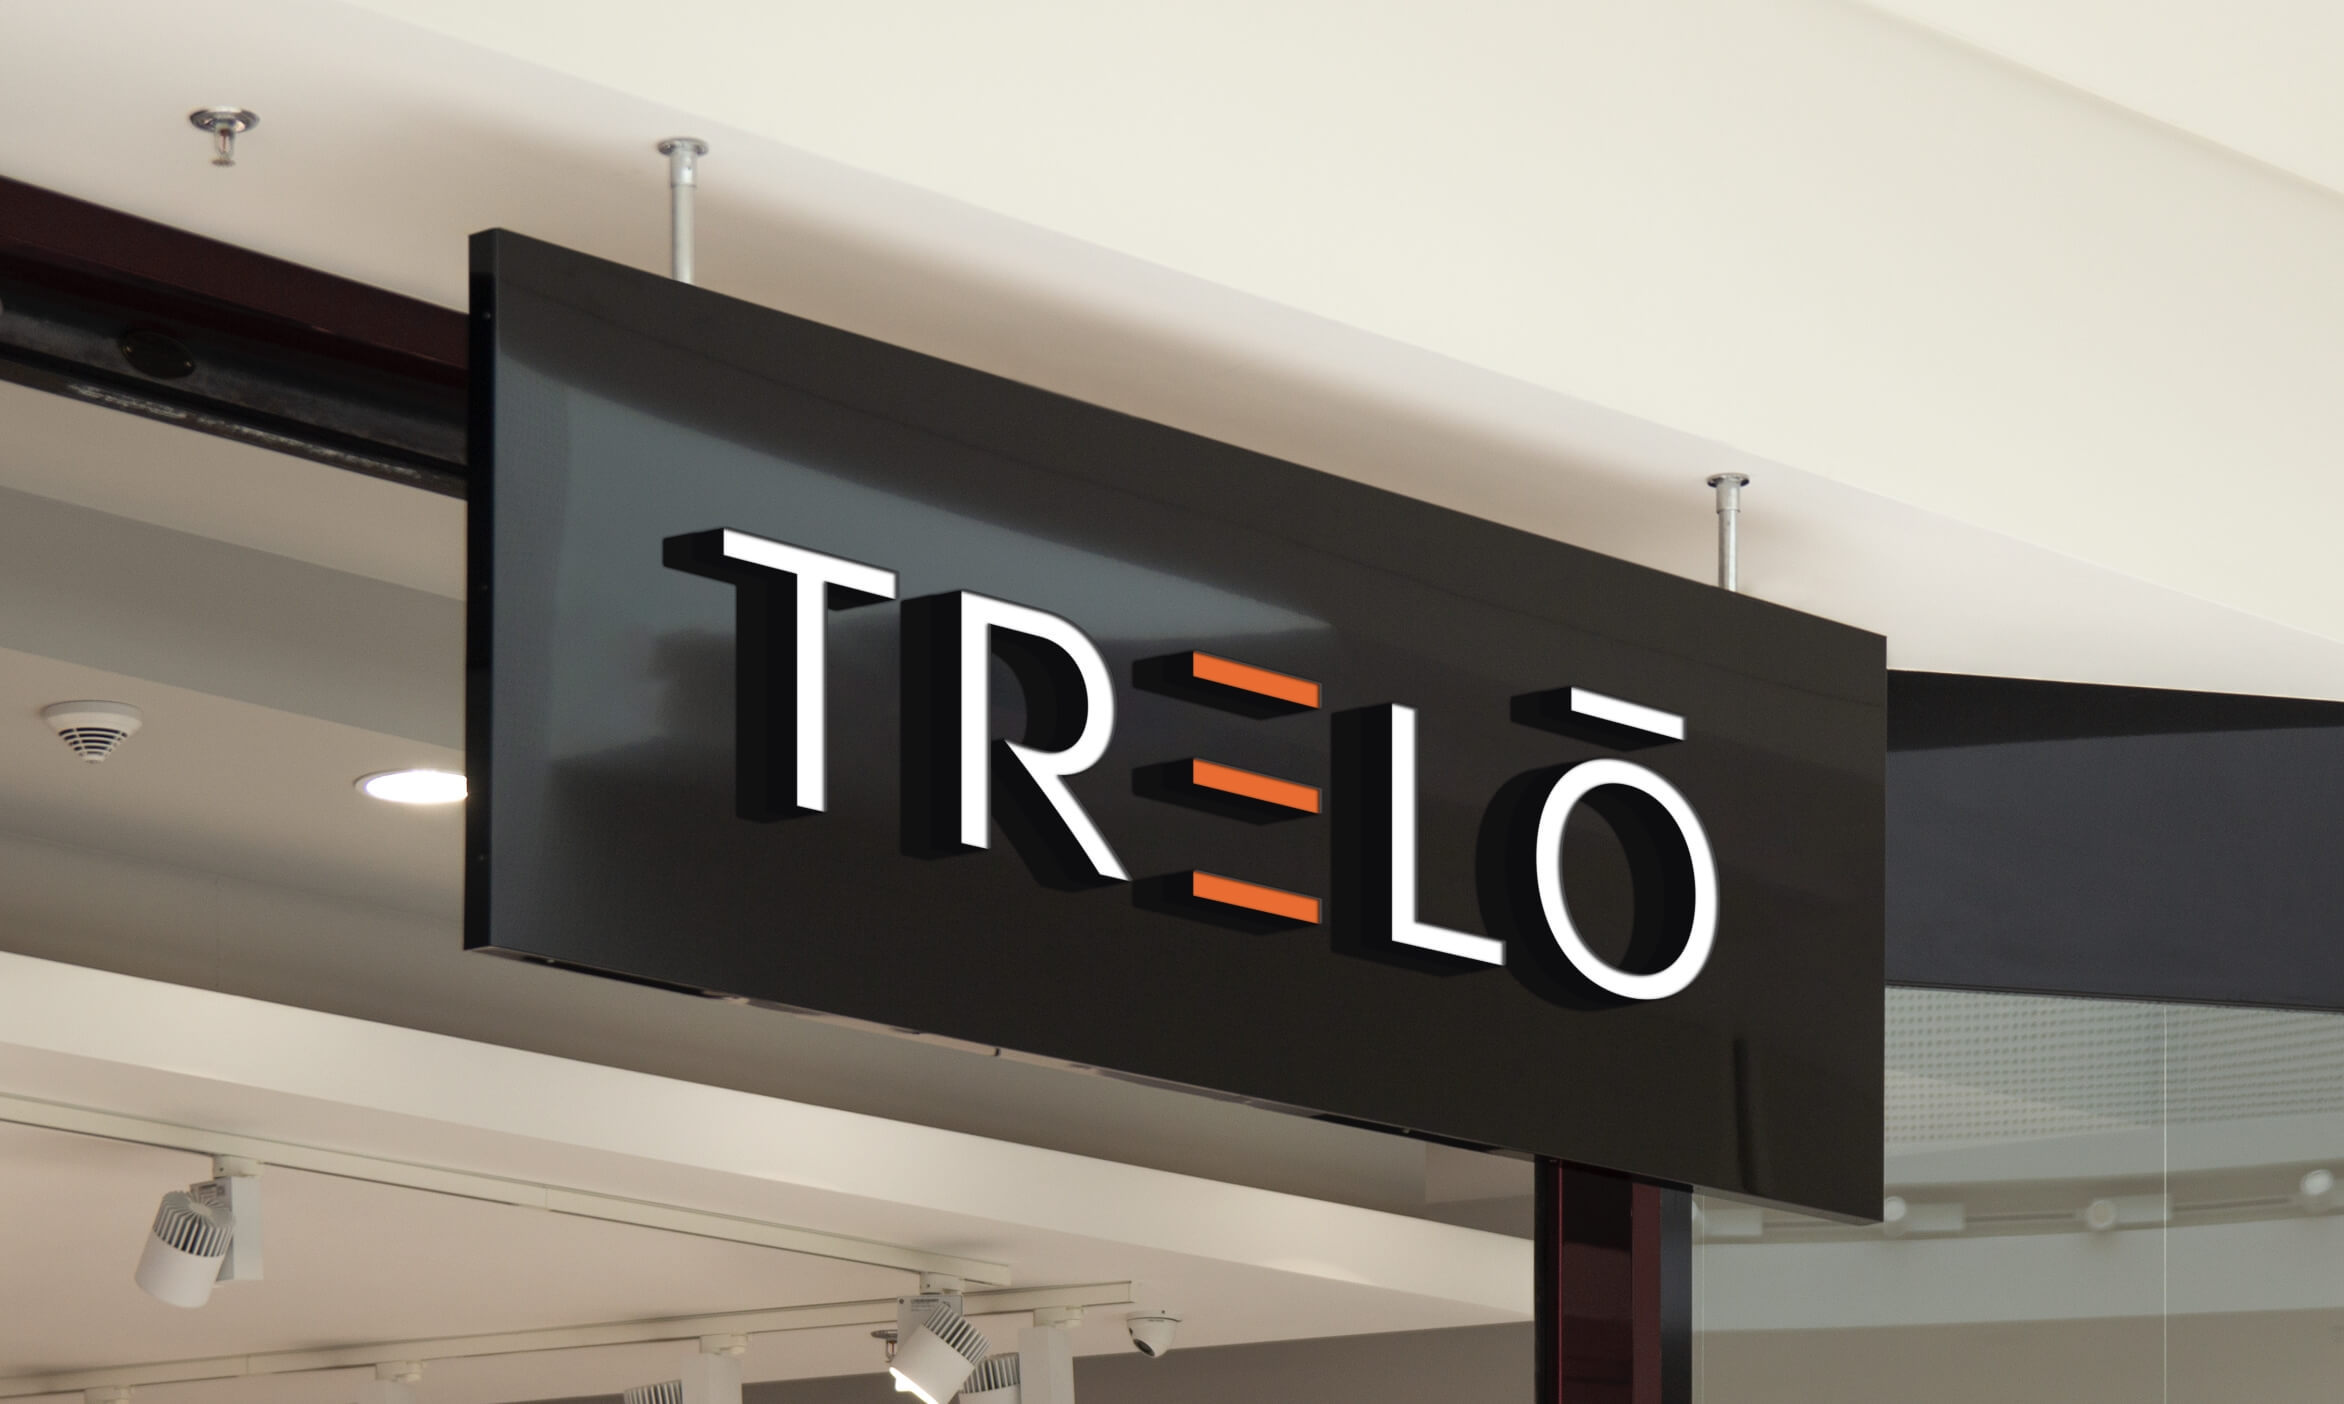 Trelō